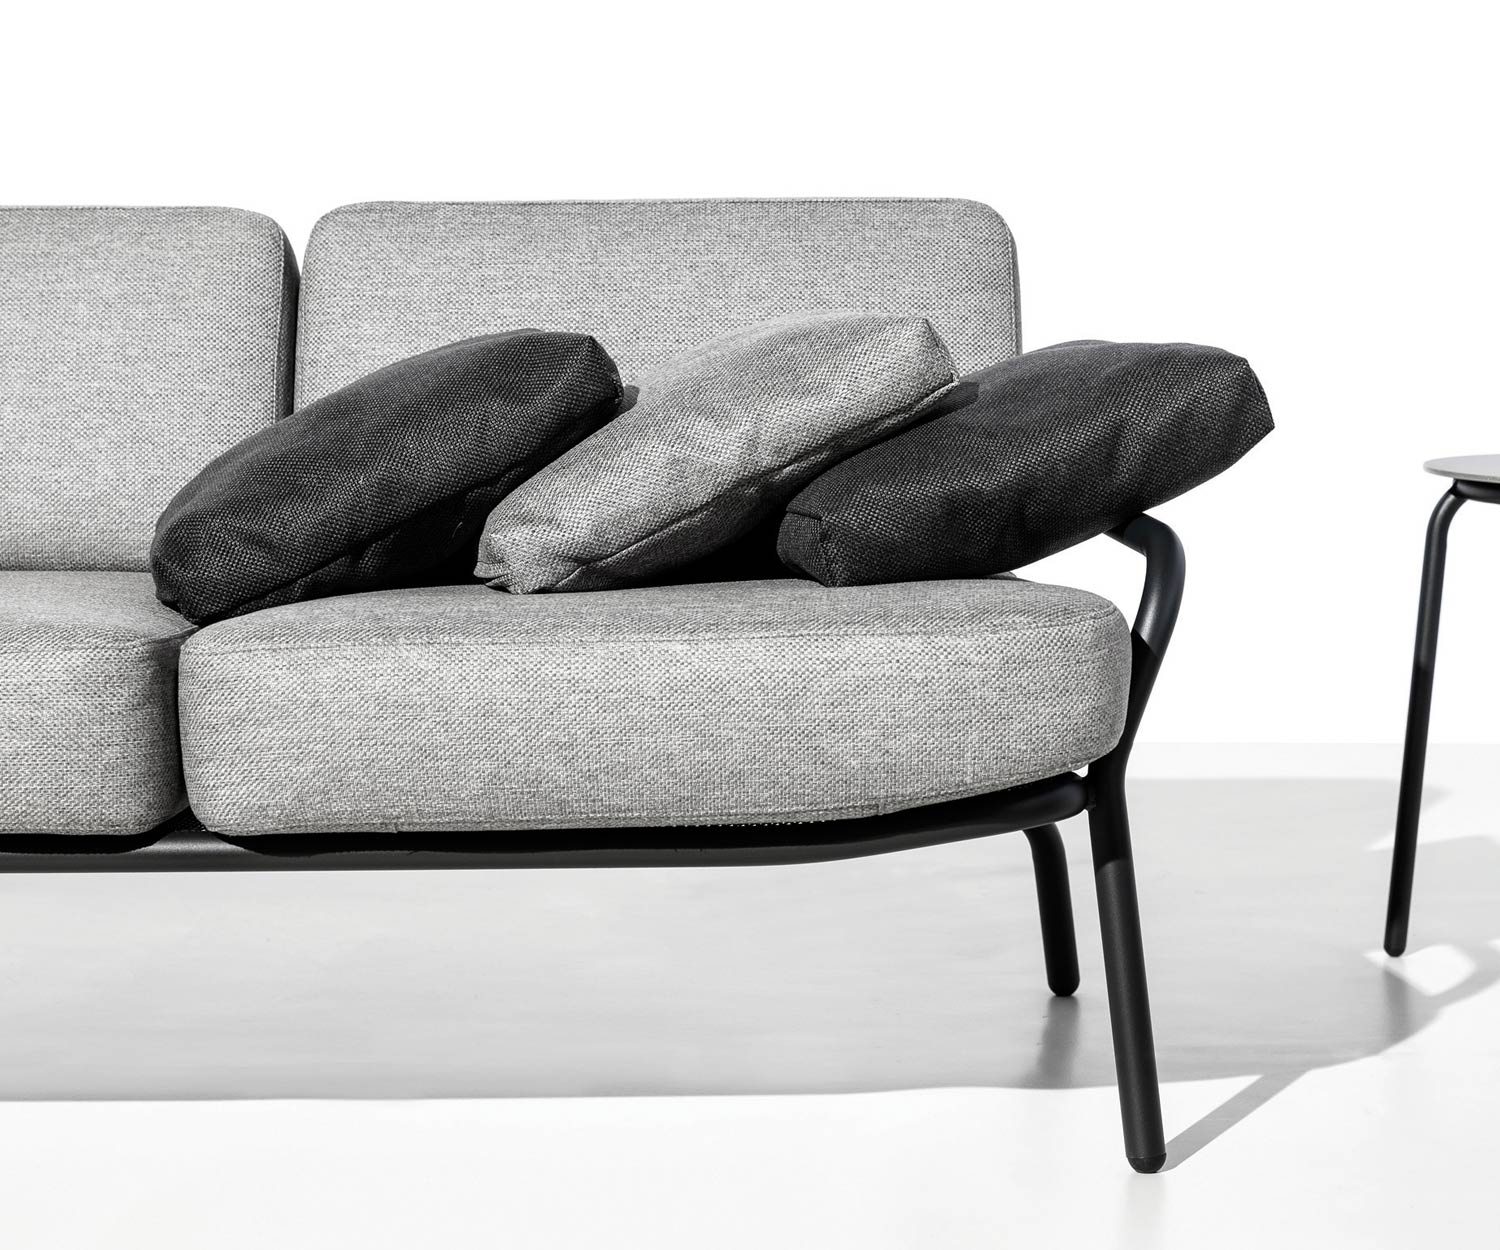 Hochwertiges Todus Starling Design Outdoor Sofa im Detail Polsterauflage und Gestell